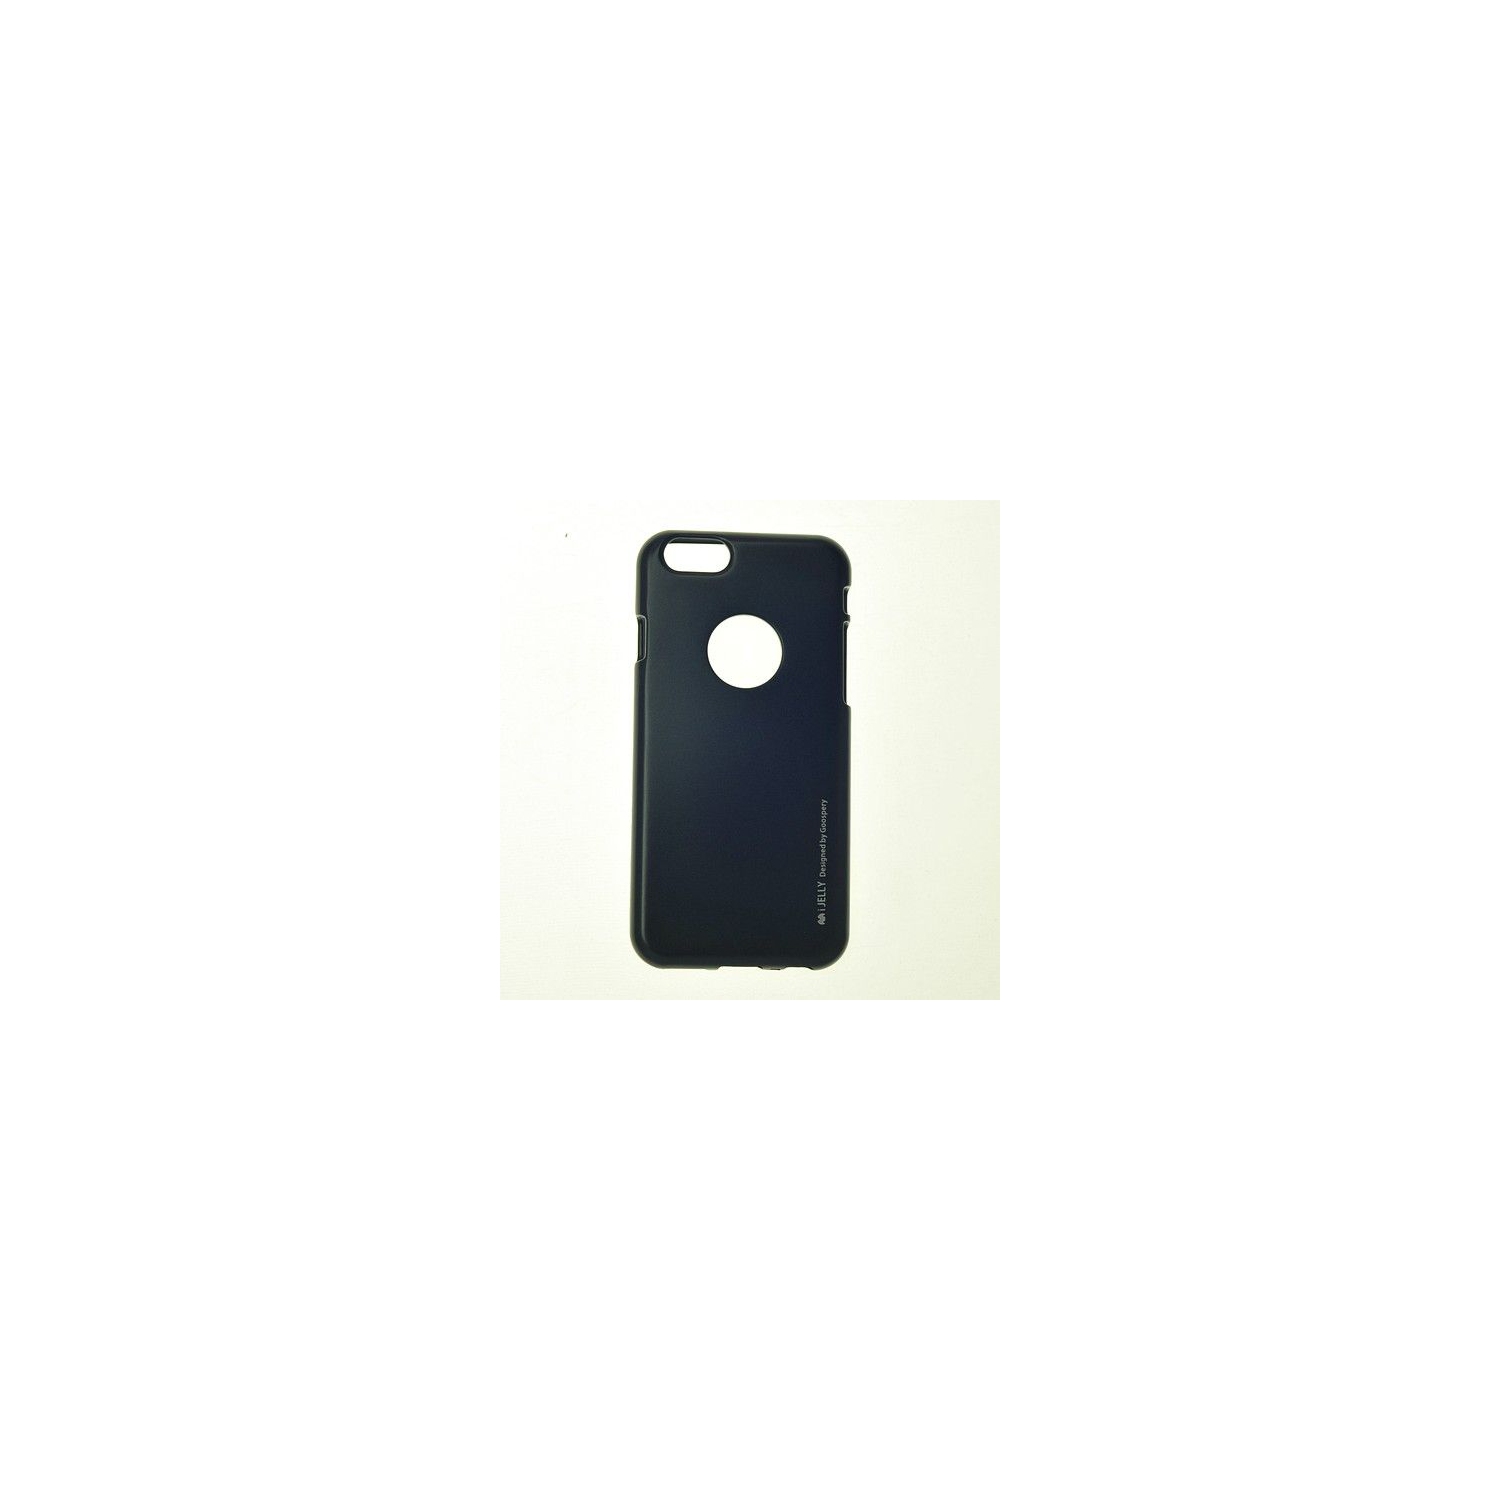 Iphone 5/s/SE Goospery iJelly Metal Case, Black